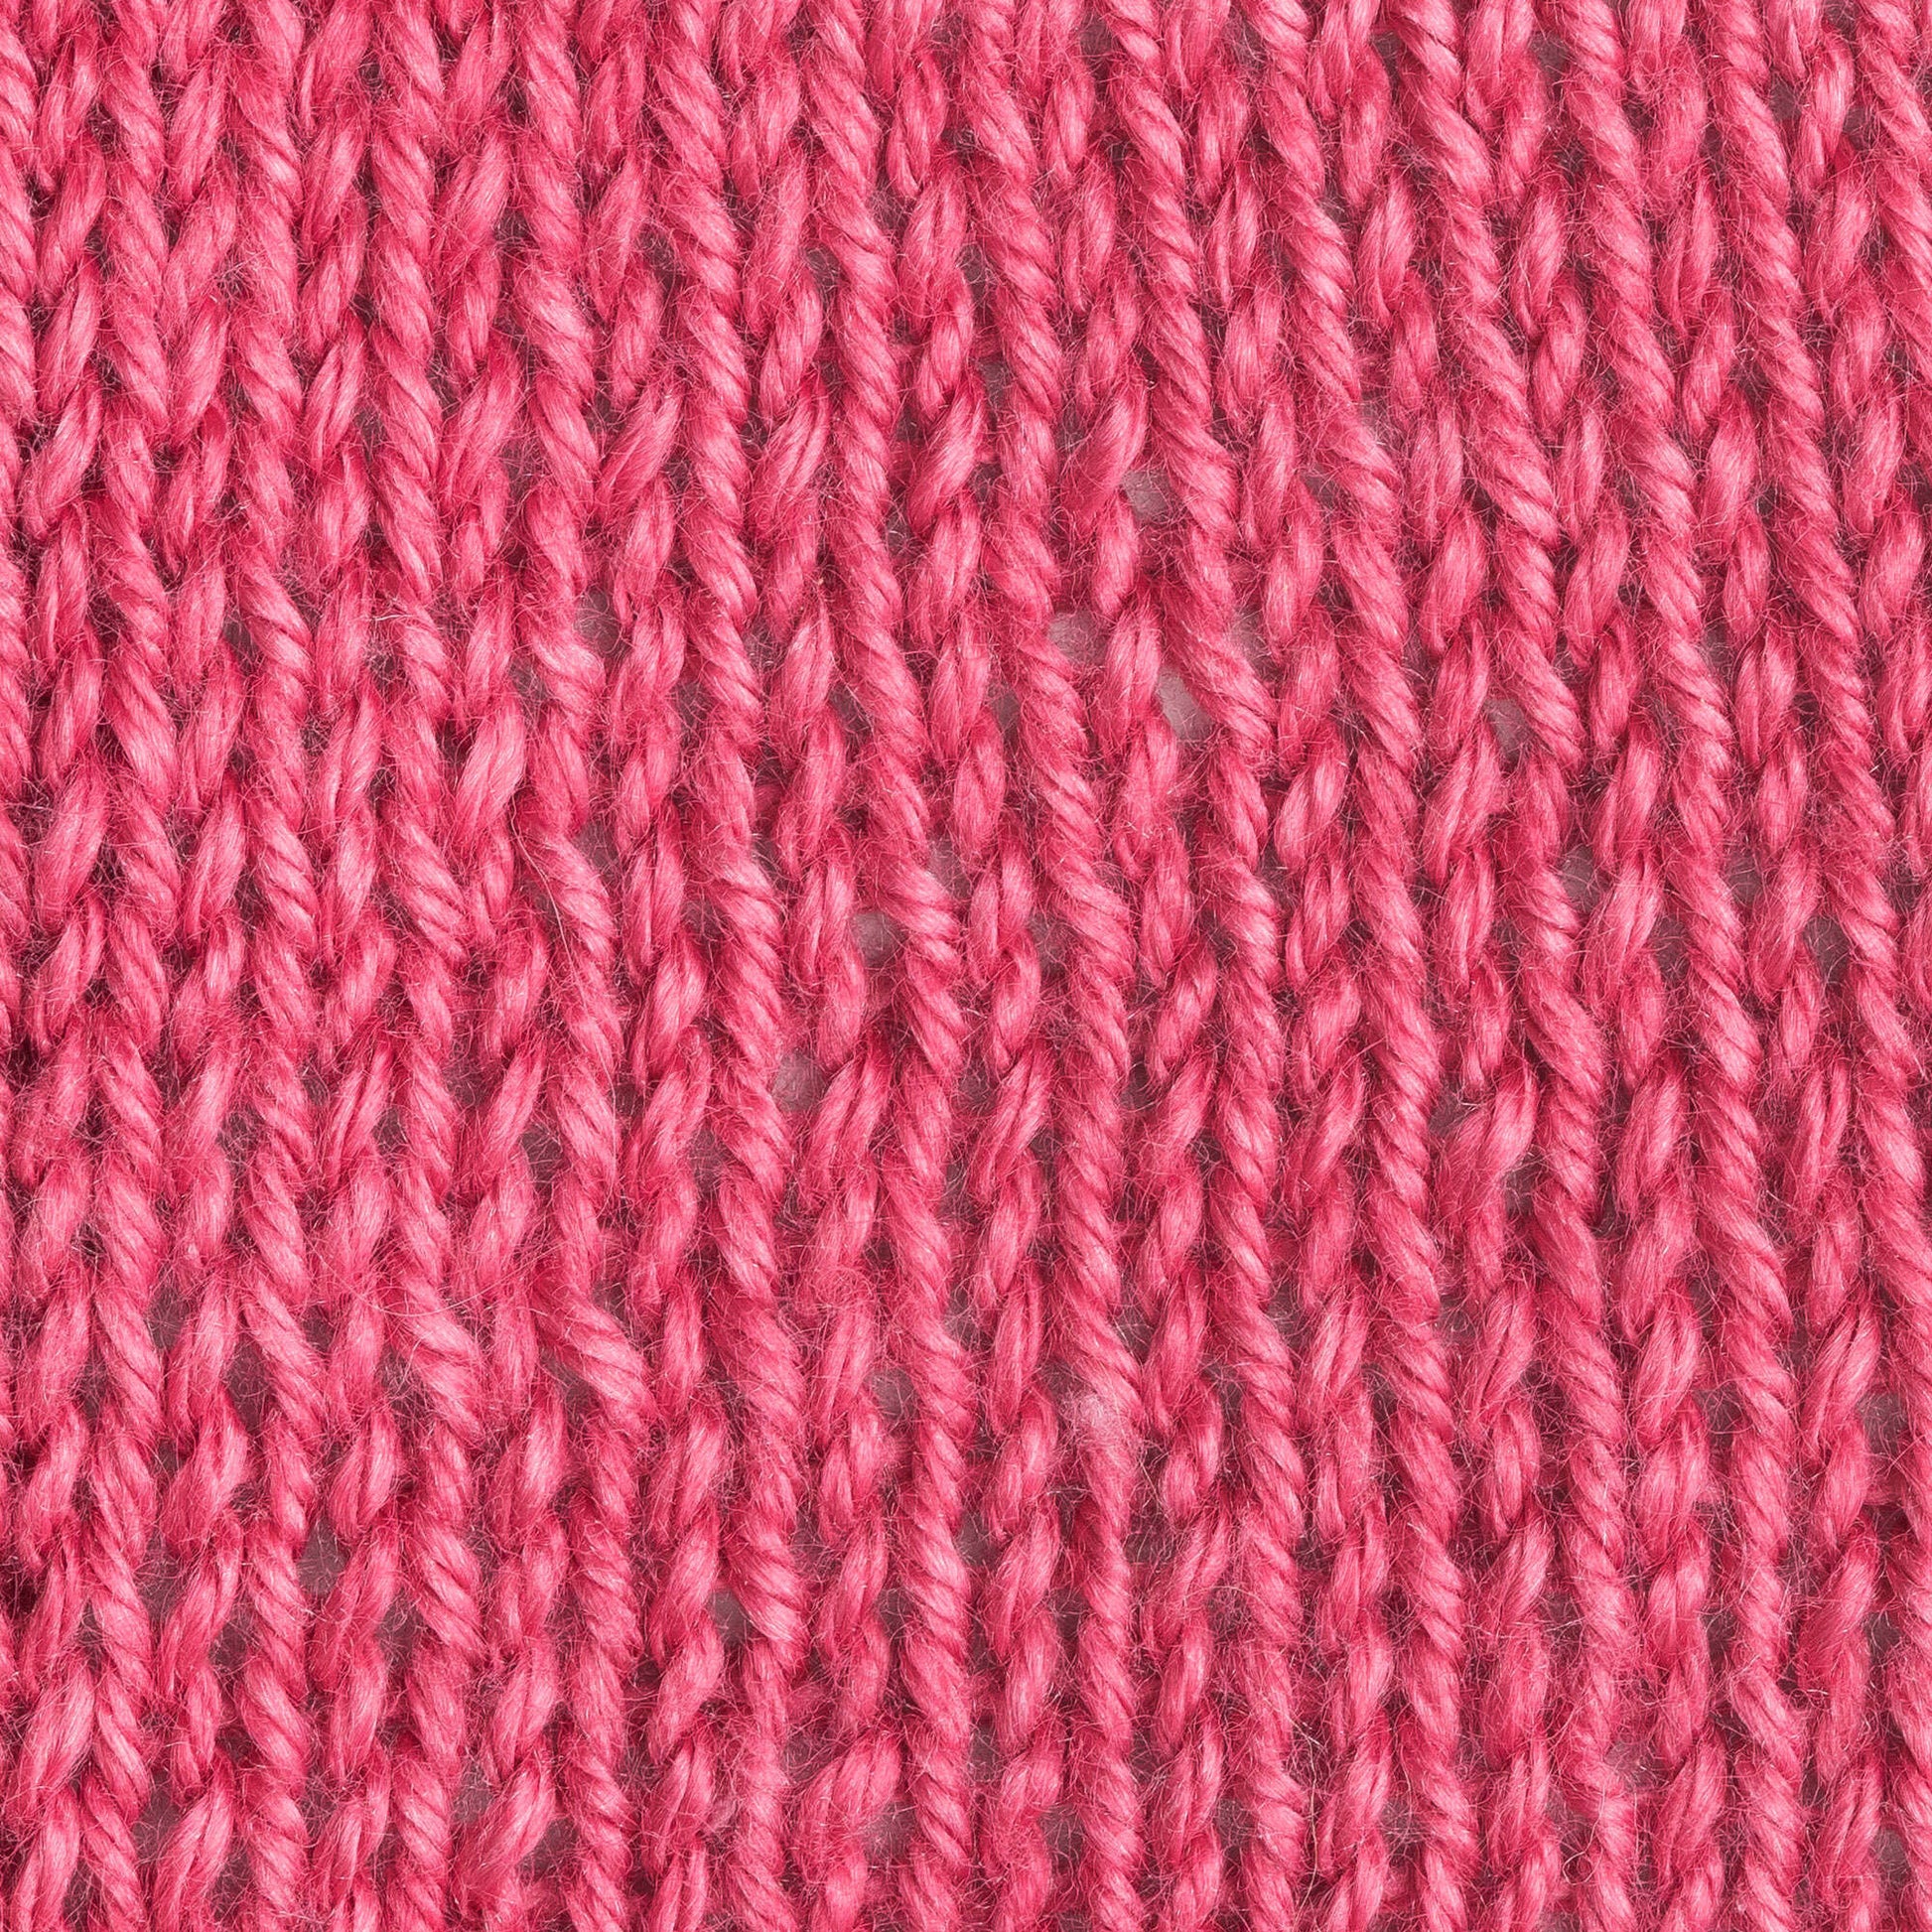 Patons Silk Bamboo Yarn - Discontinued Shades Petunia Pink